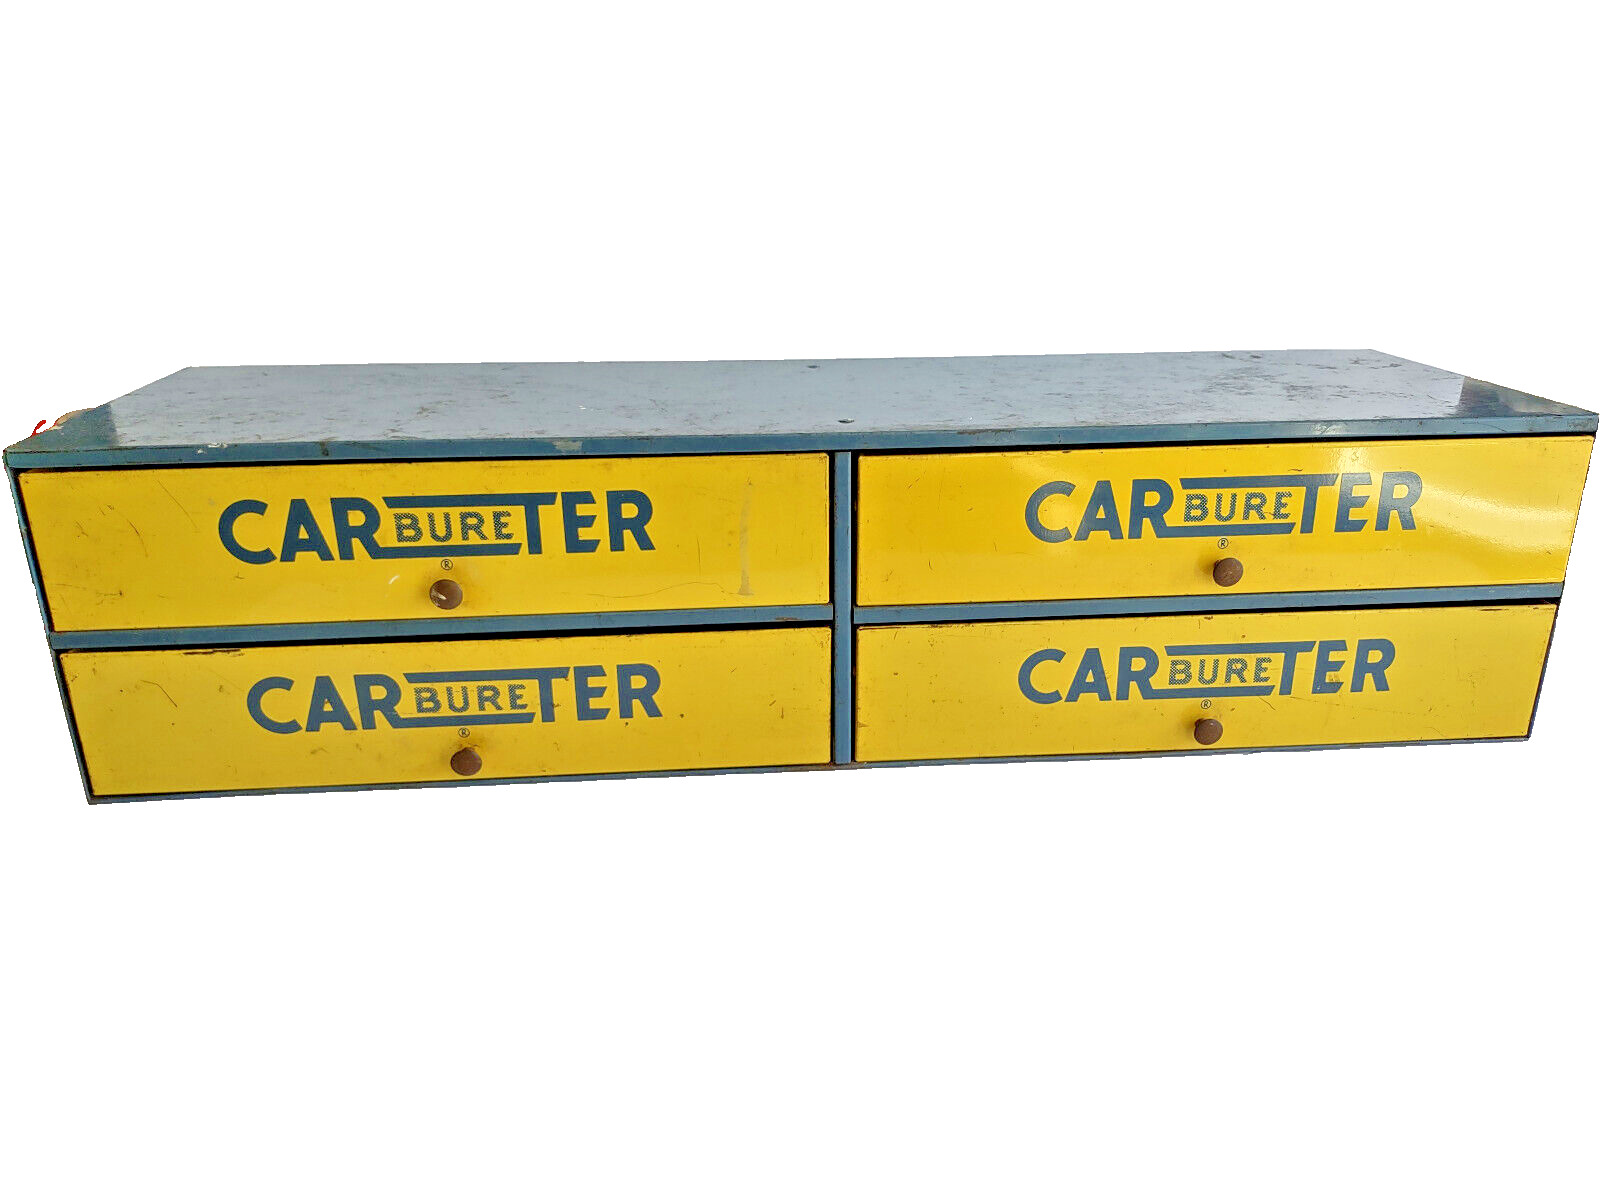 Vintage Carter Carburetor 4 Drawer Parts Storage Cabinet sign